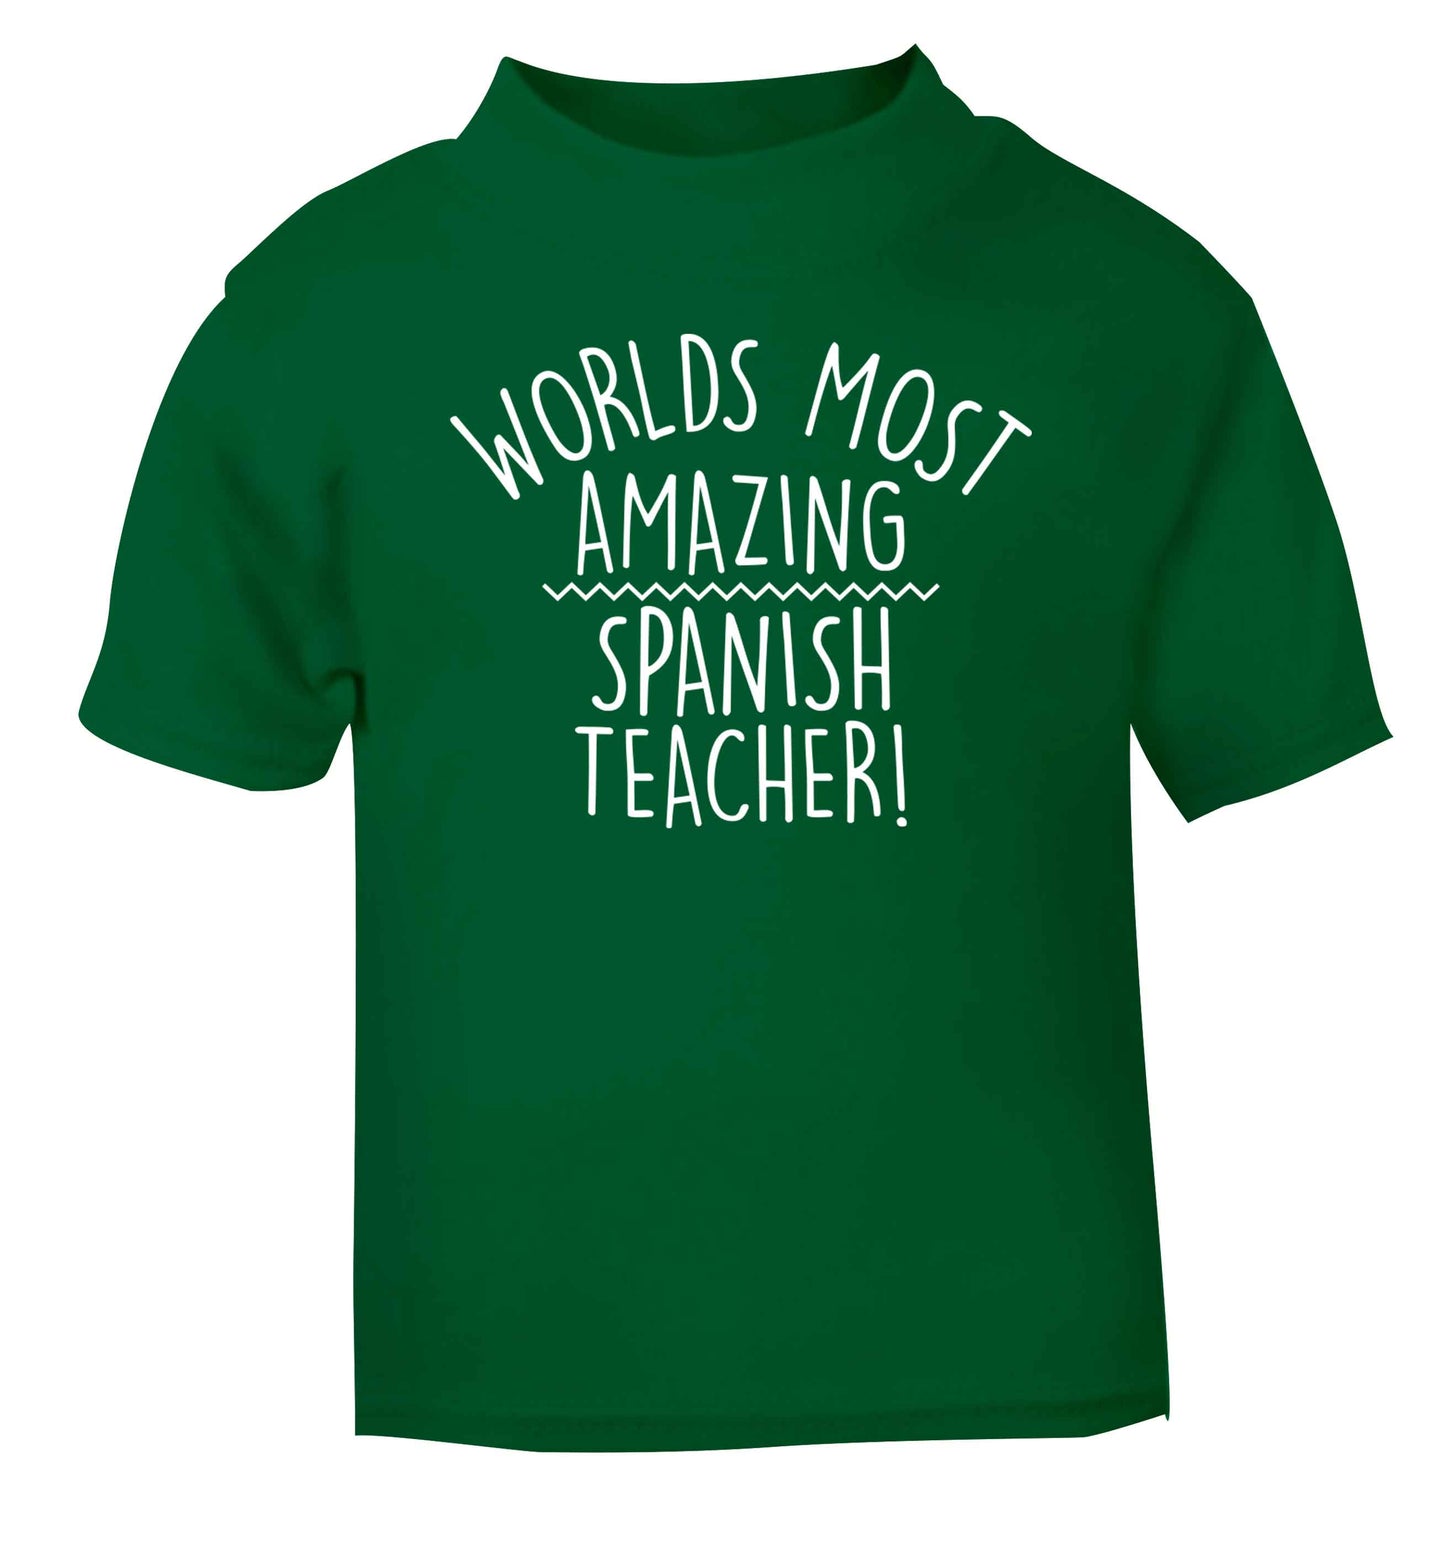 Worlds most amazing Spanish teacher green baby toddler Tshirt 2 Years